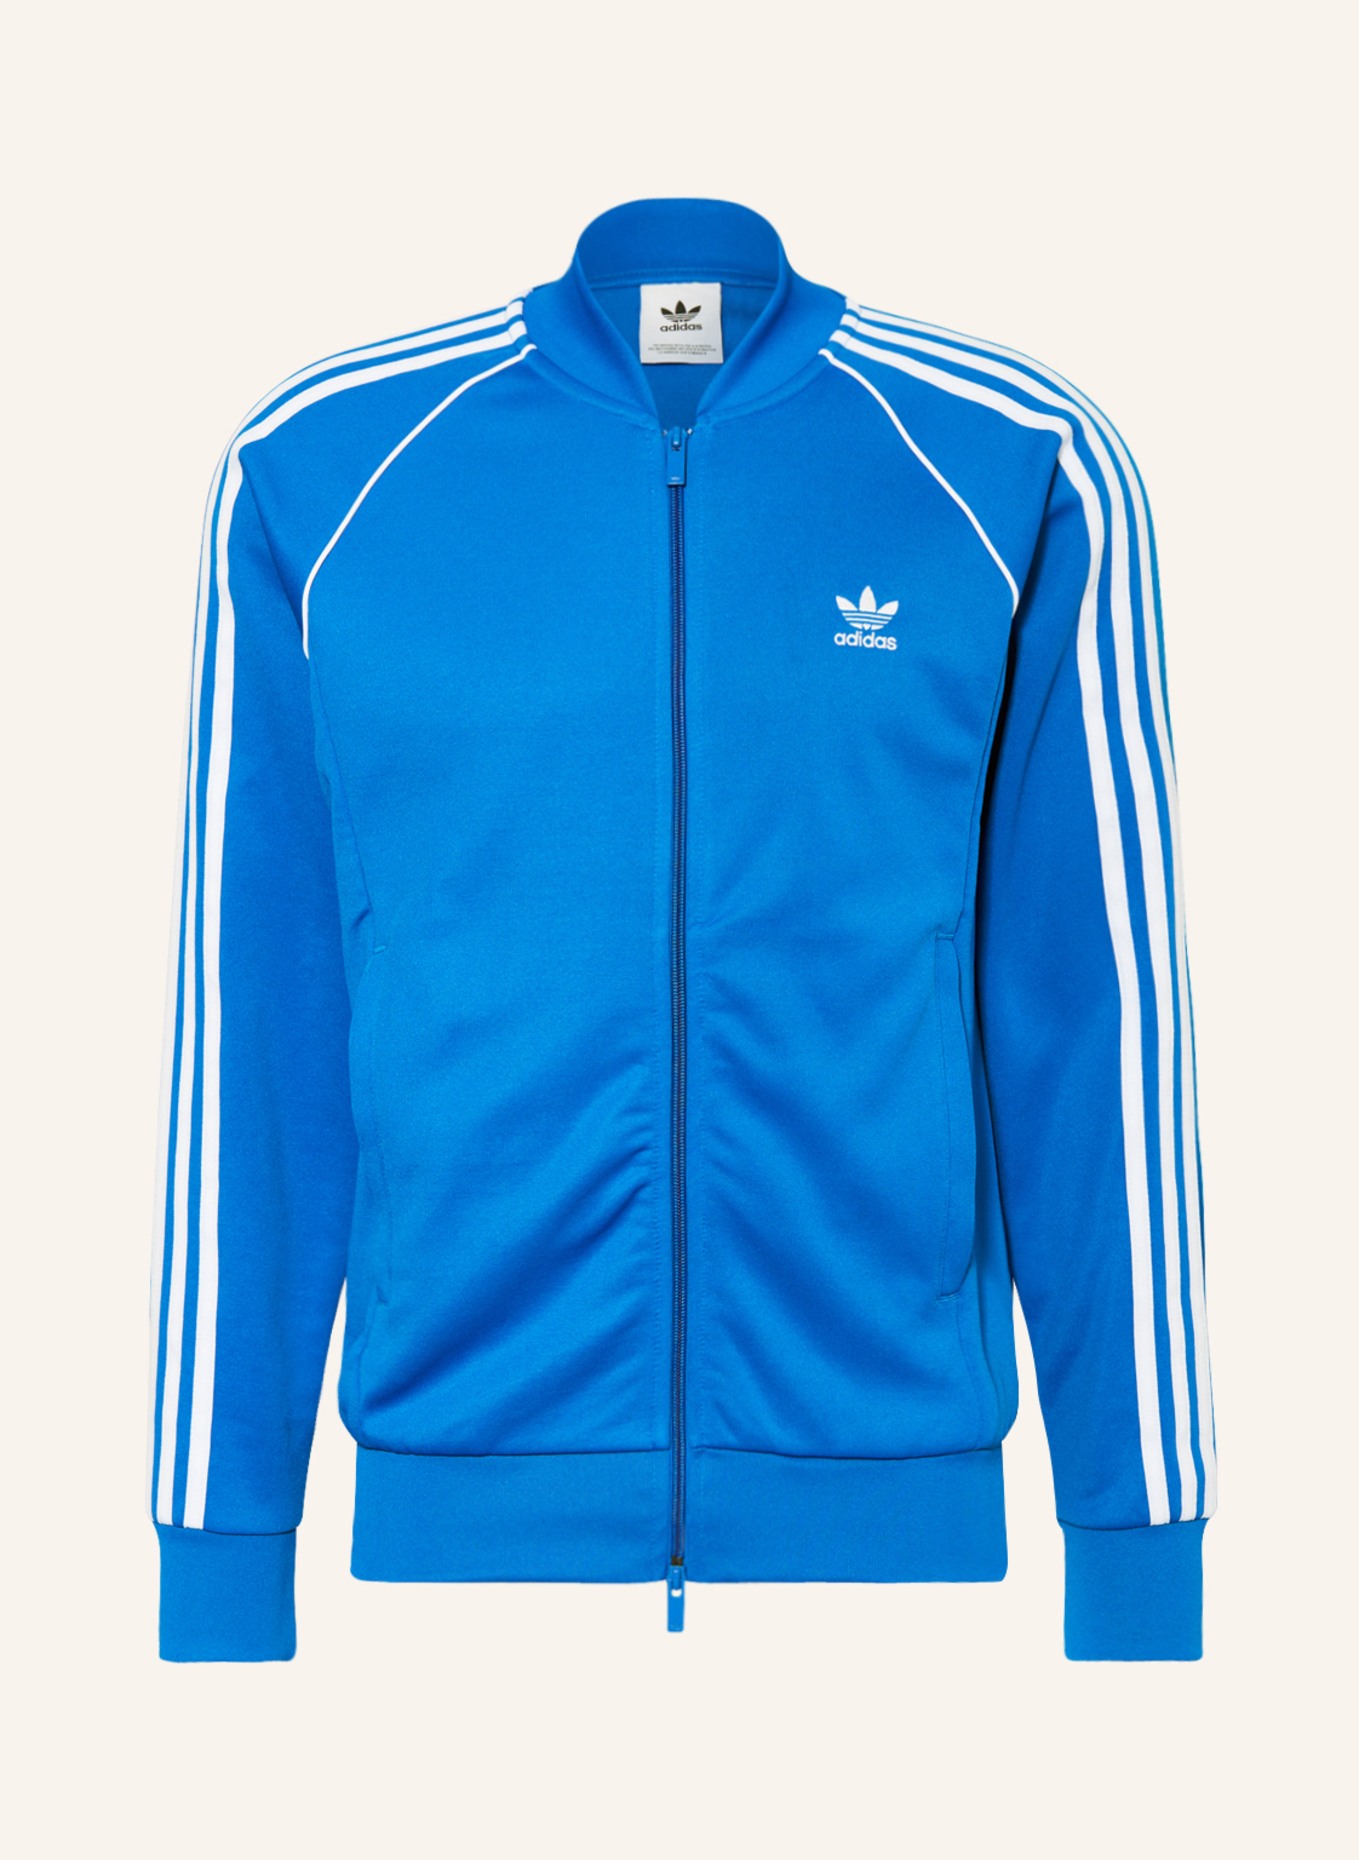 adidas Originals Training jacket blue/ ORIGINALS in ADICOLOR SST white CLASSICS